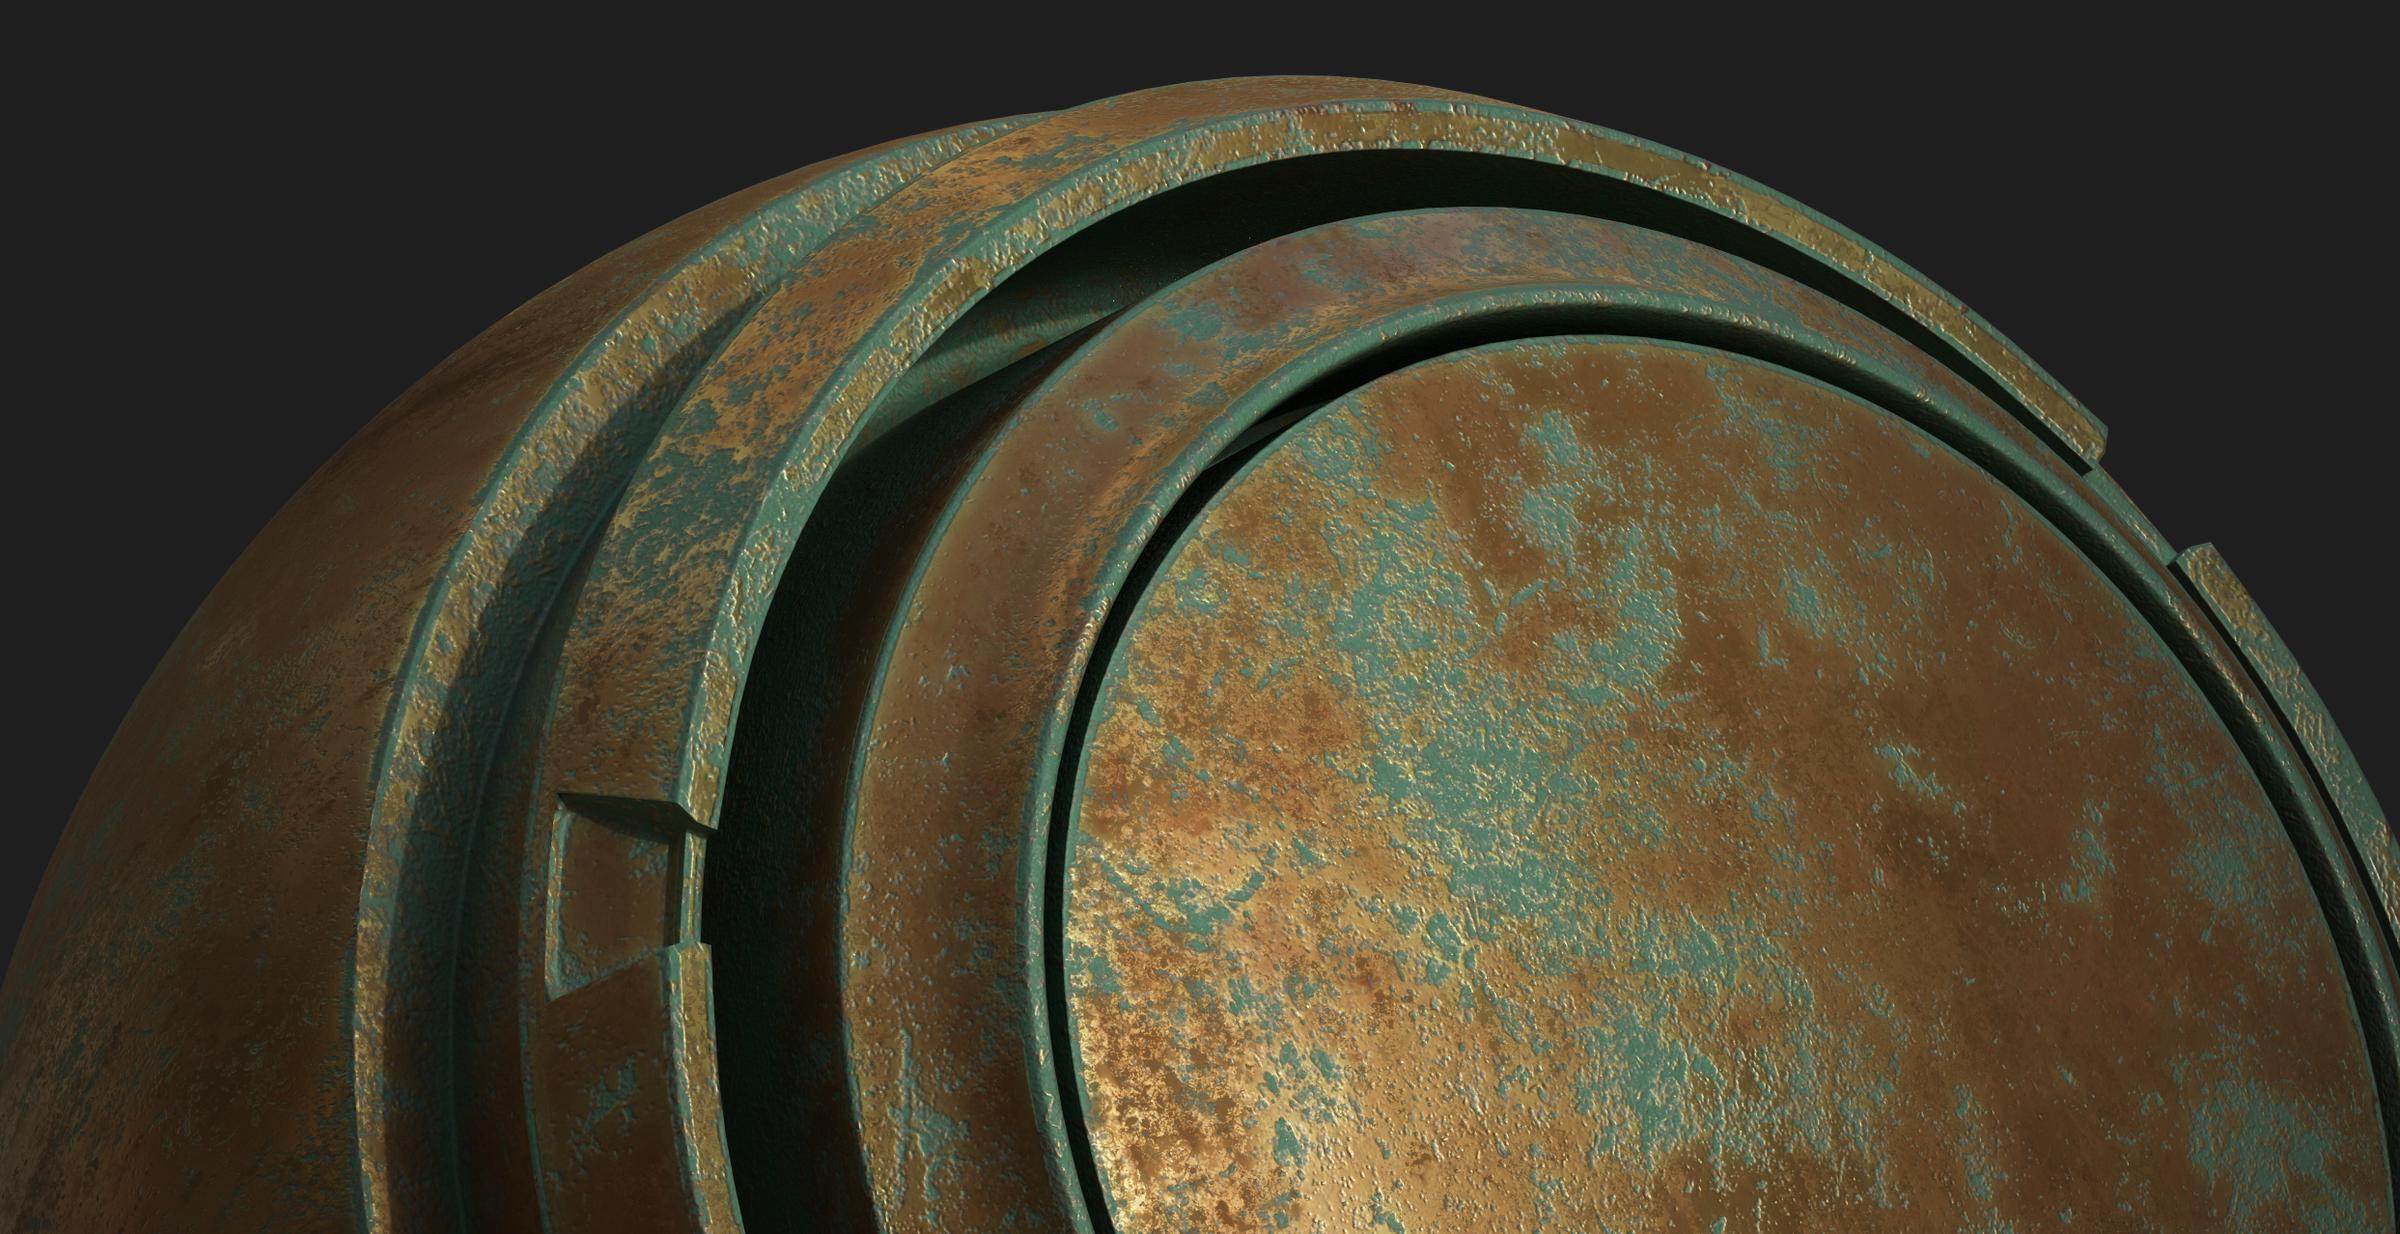 Oxidized Bronze Substance 3D Community Assets